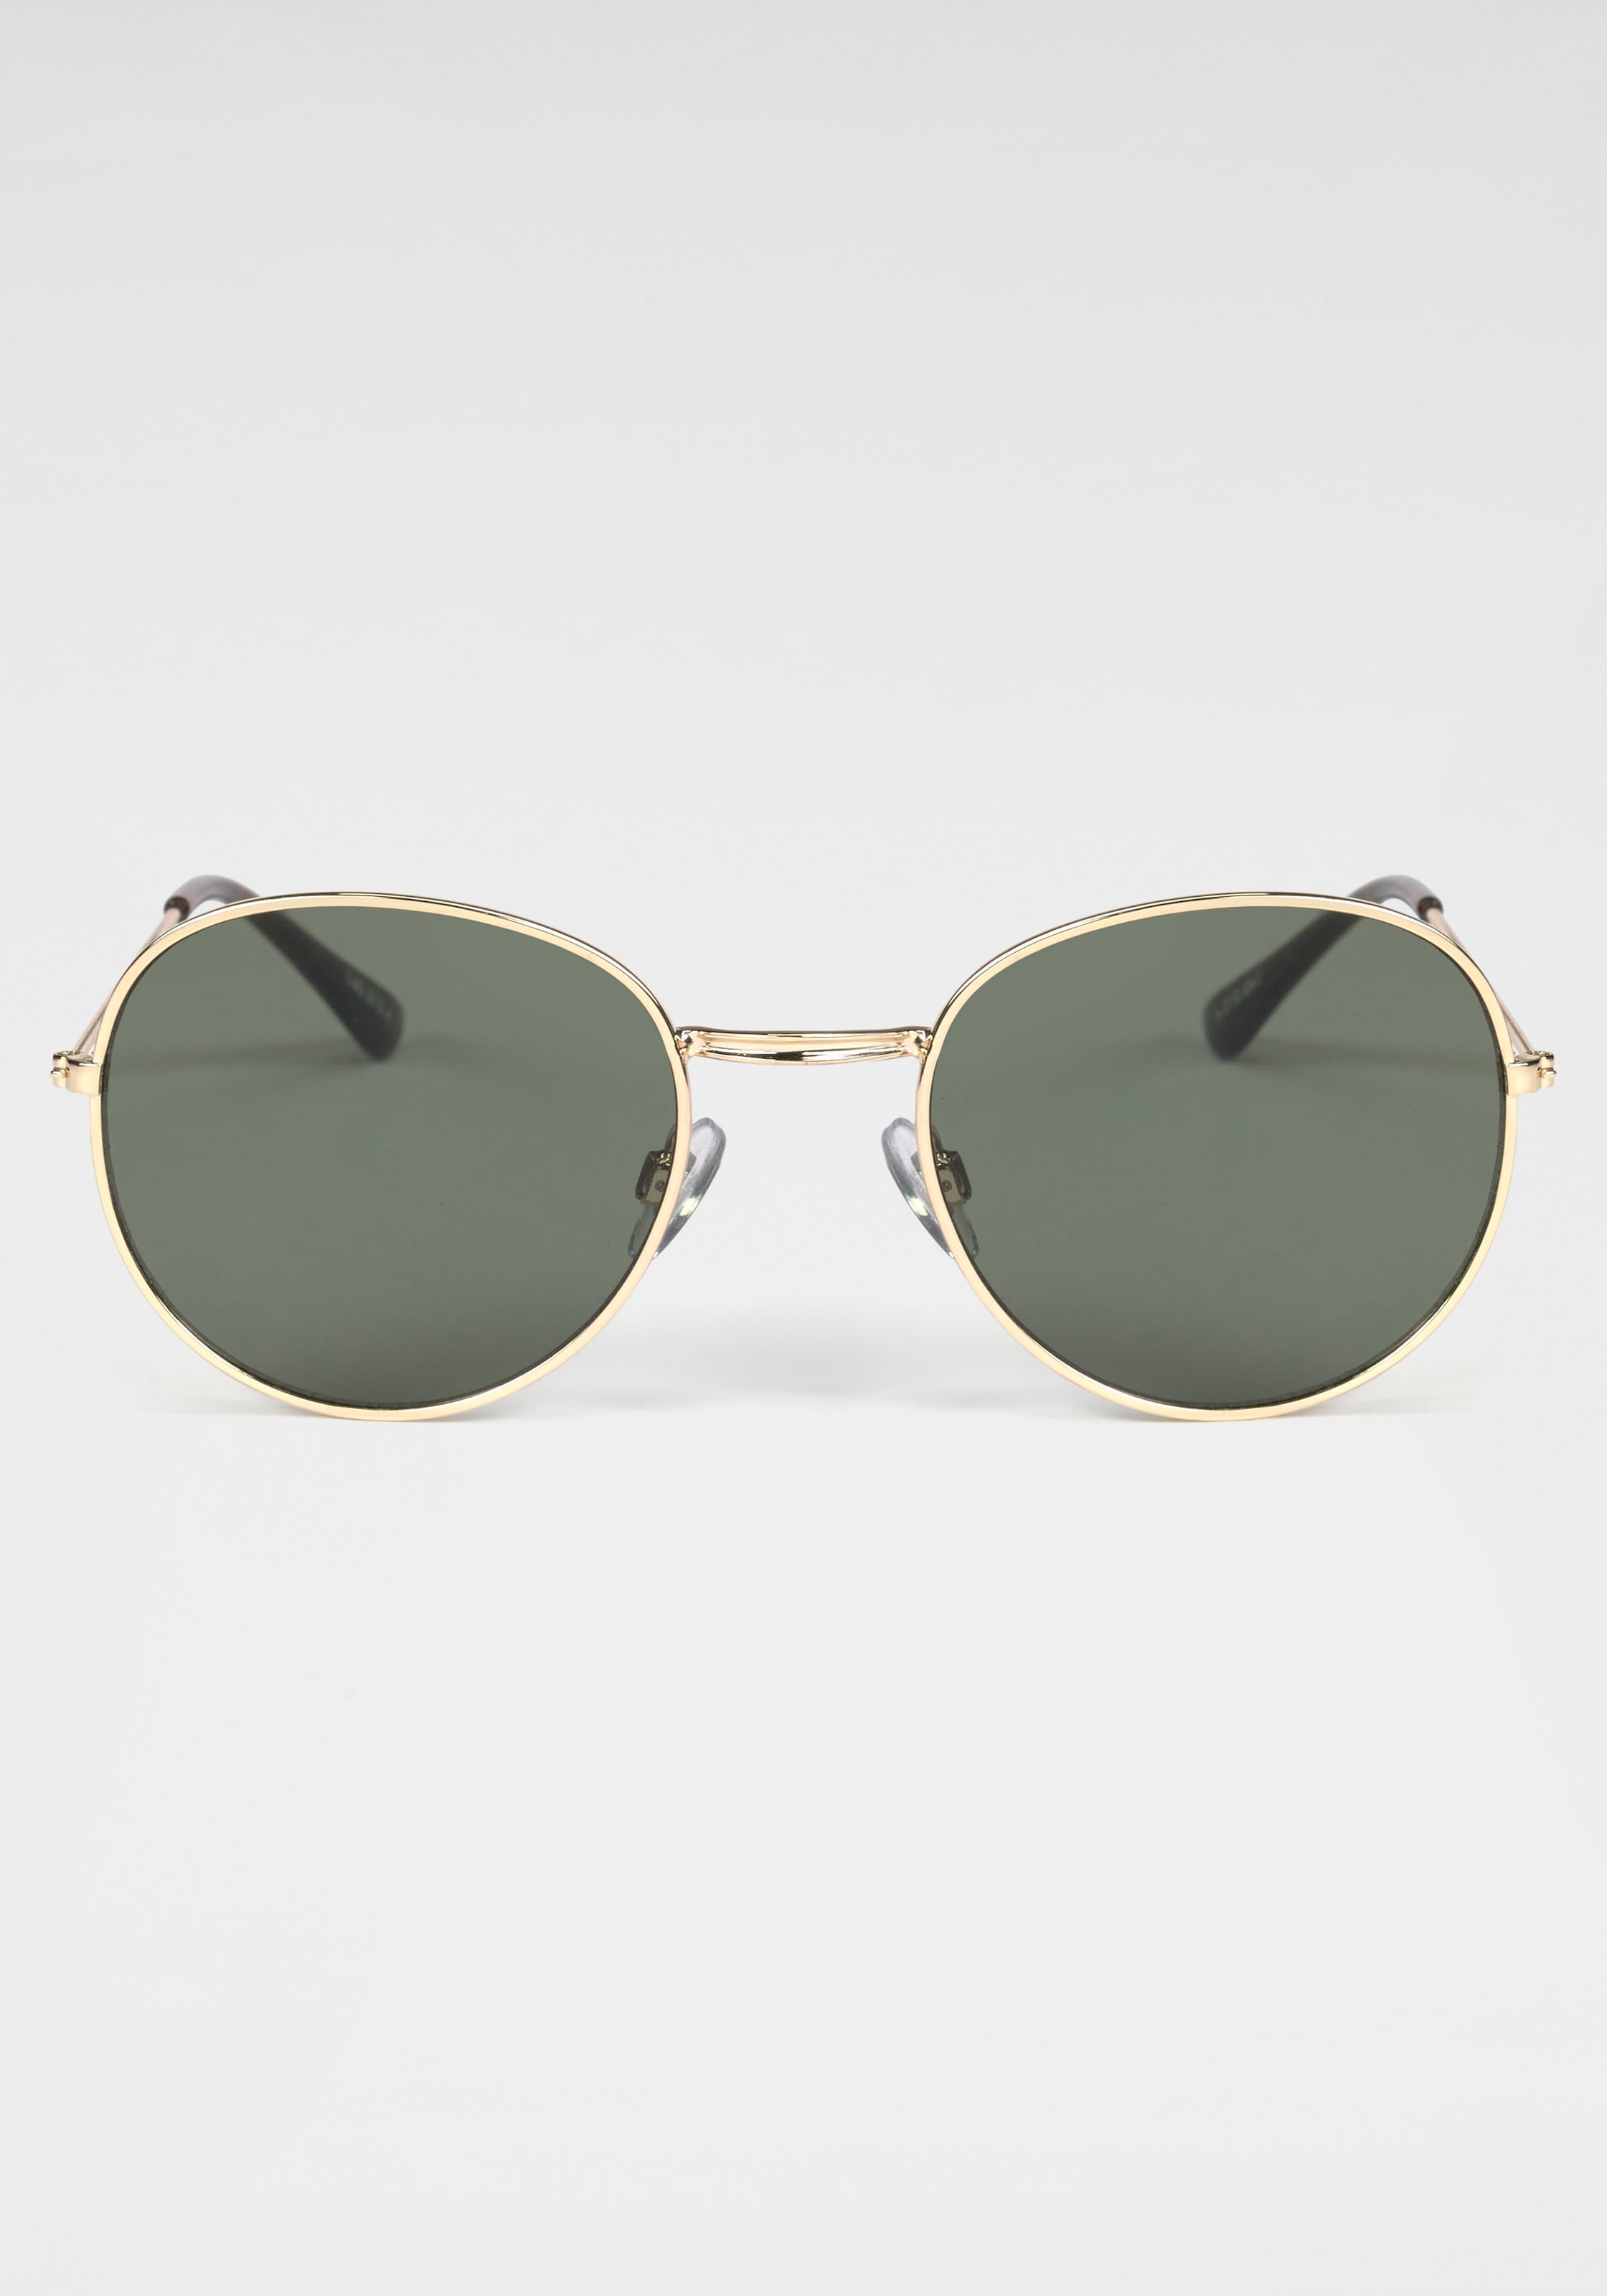 BASEFIELD Sonnenbrille, Klassische runde Metall-Sonnenbrille in goldfarben